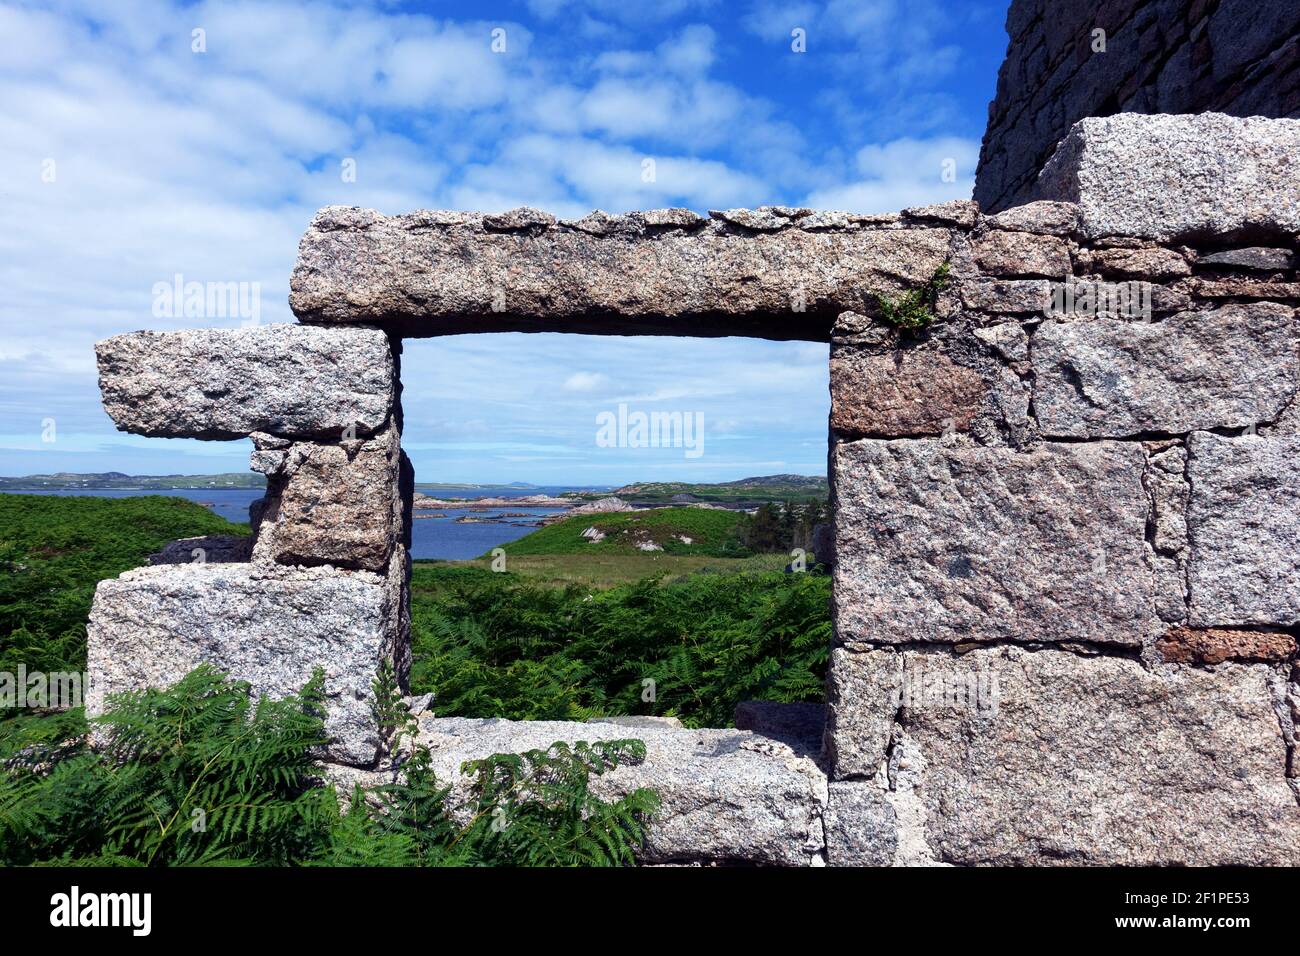 Vista de Mull a través de la ventana de una casa abandonada En la Isla de Erraid en las Hébridas internas de Escocia Foto de stock